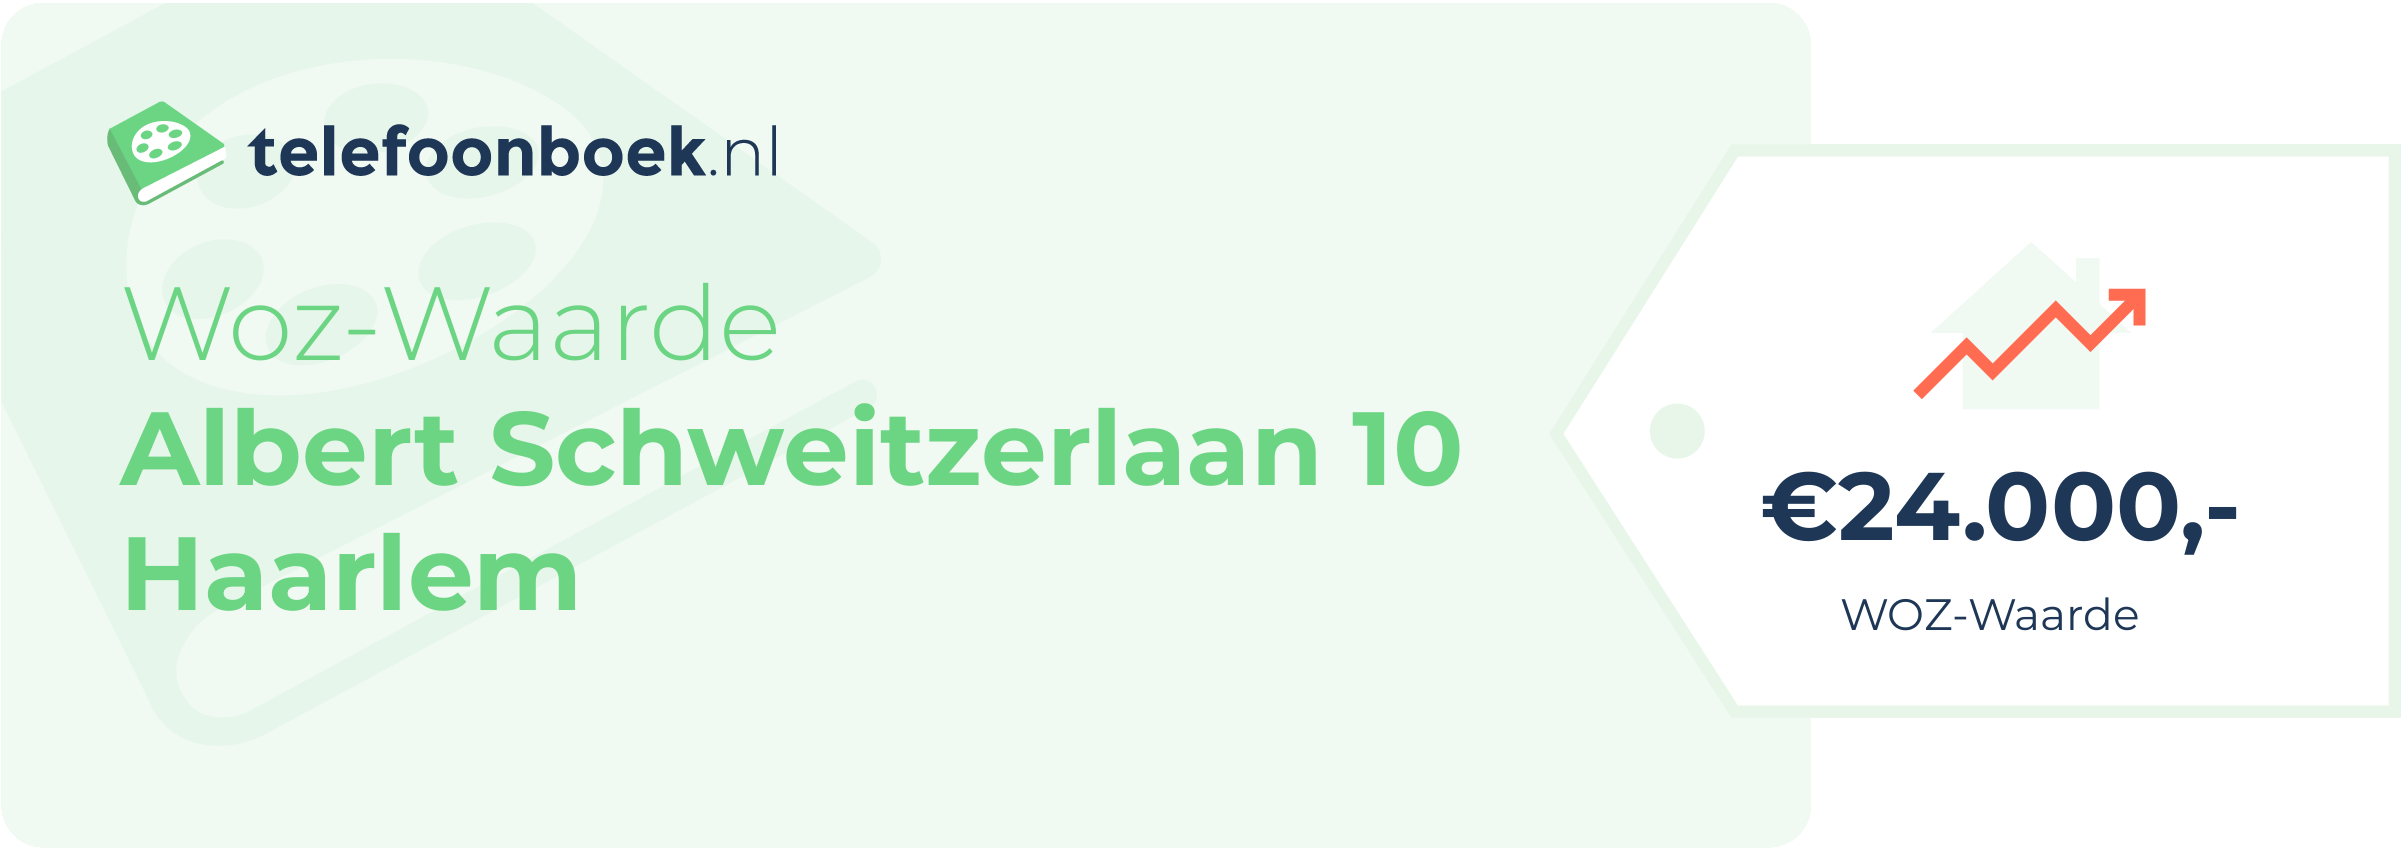 WOZ-waarde Albert Schweitzerlaan 10 Haarlem